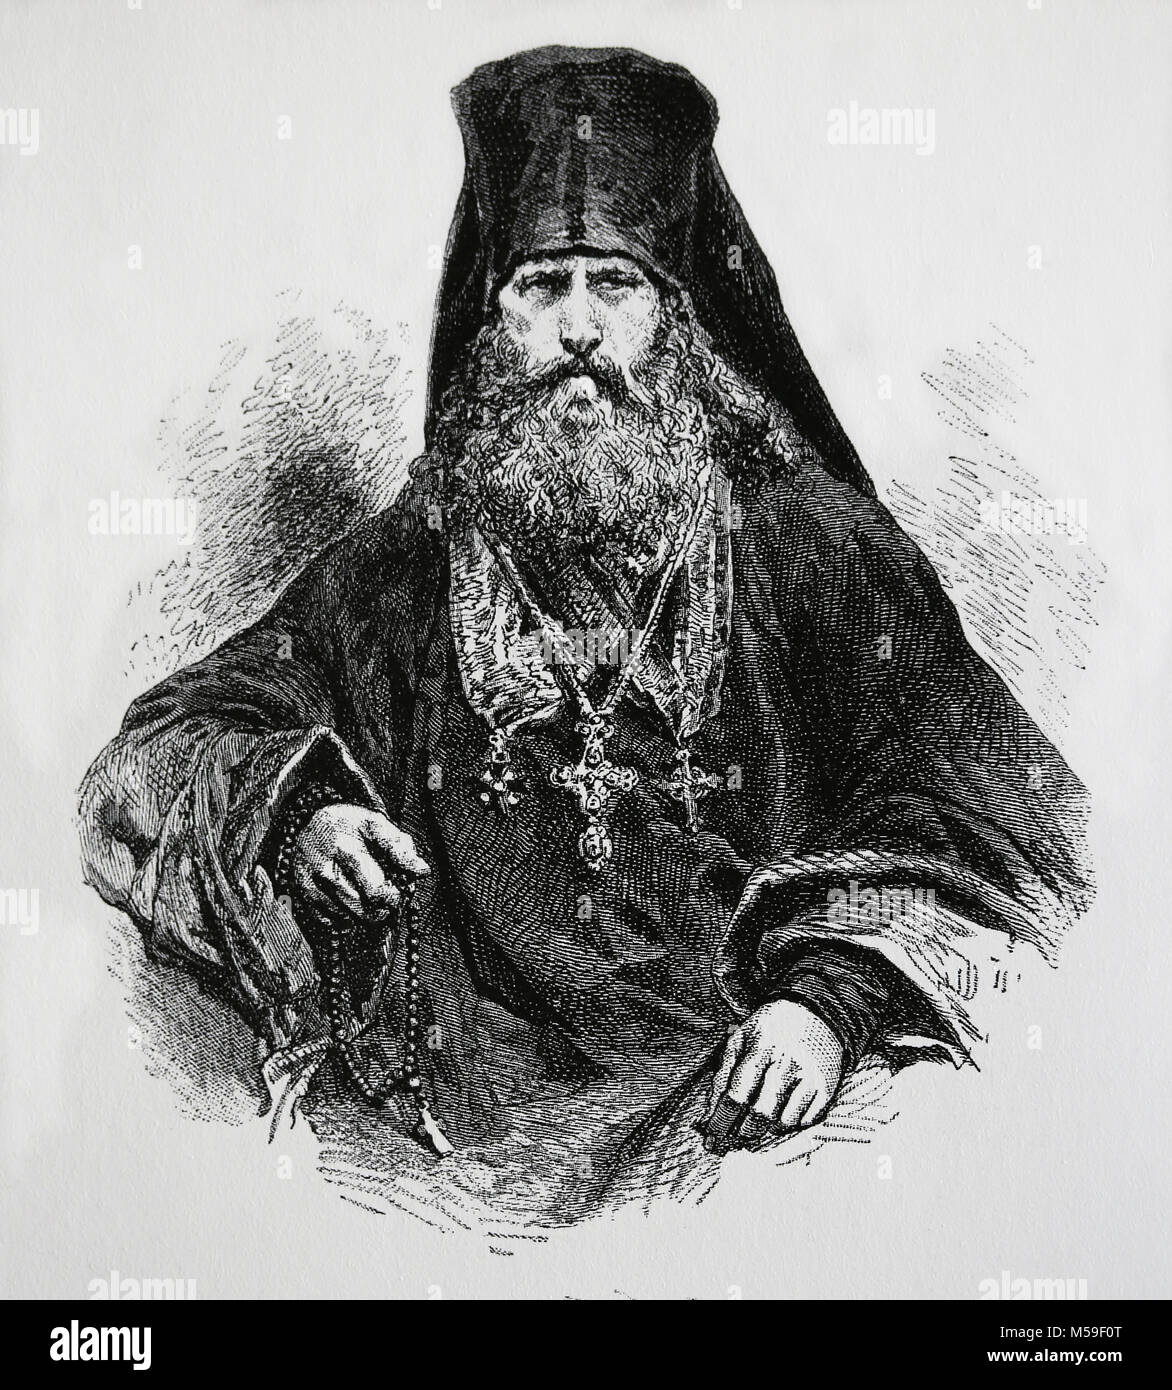 Clerc orthodoxe russe. 1870. La gravure. Banque D'Images